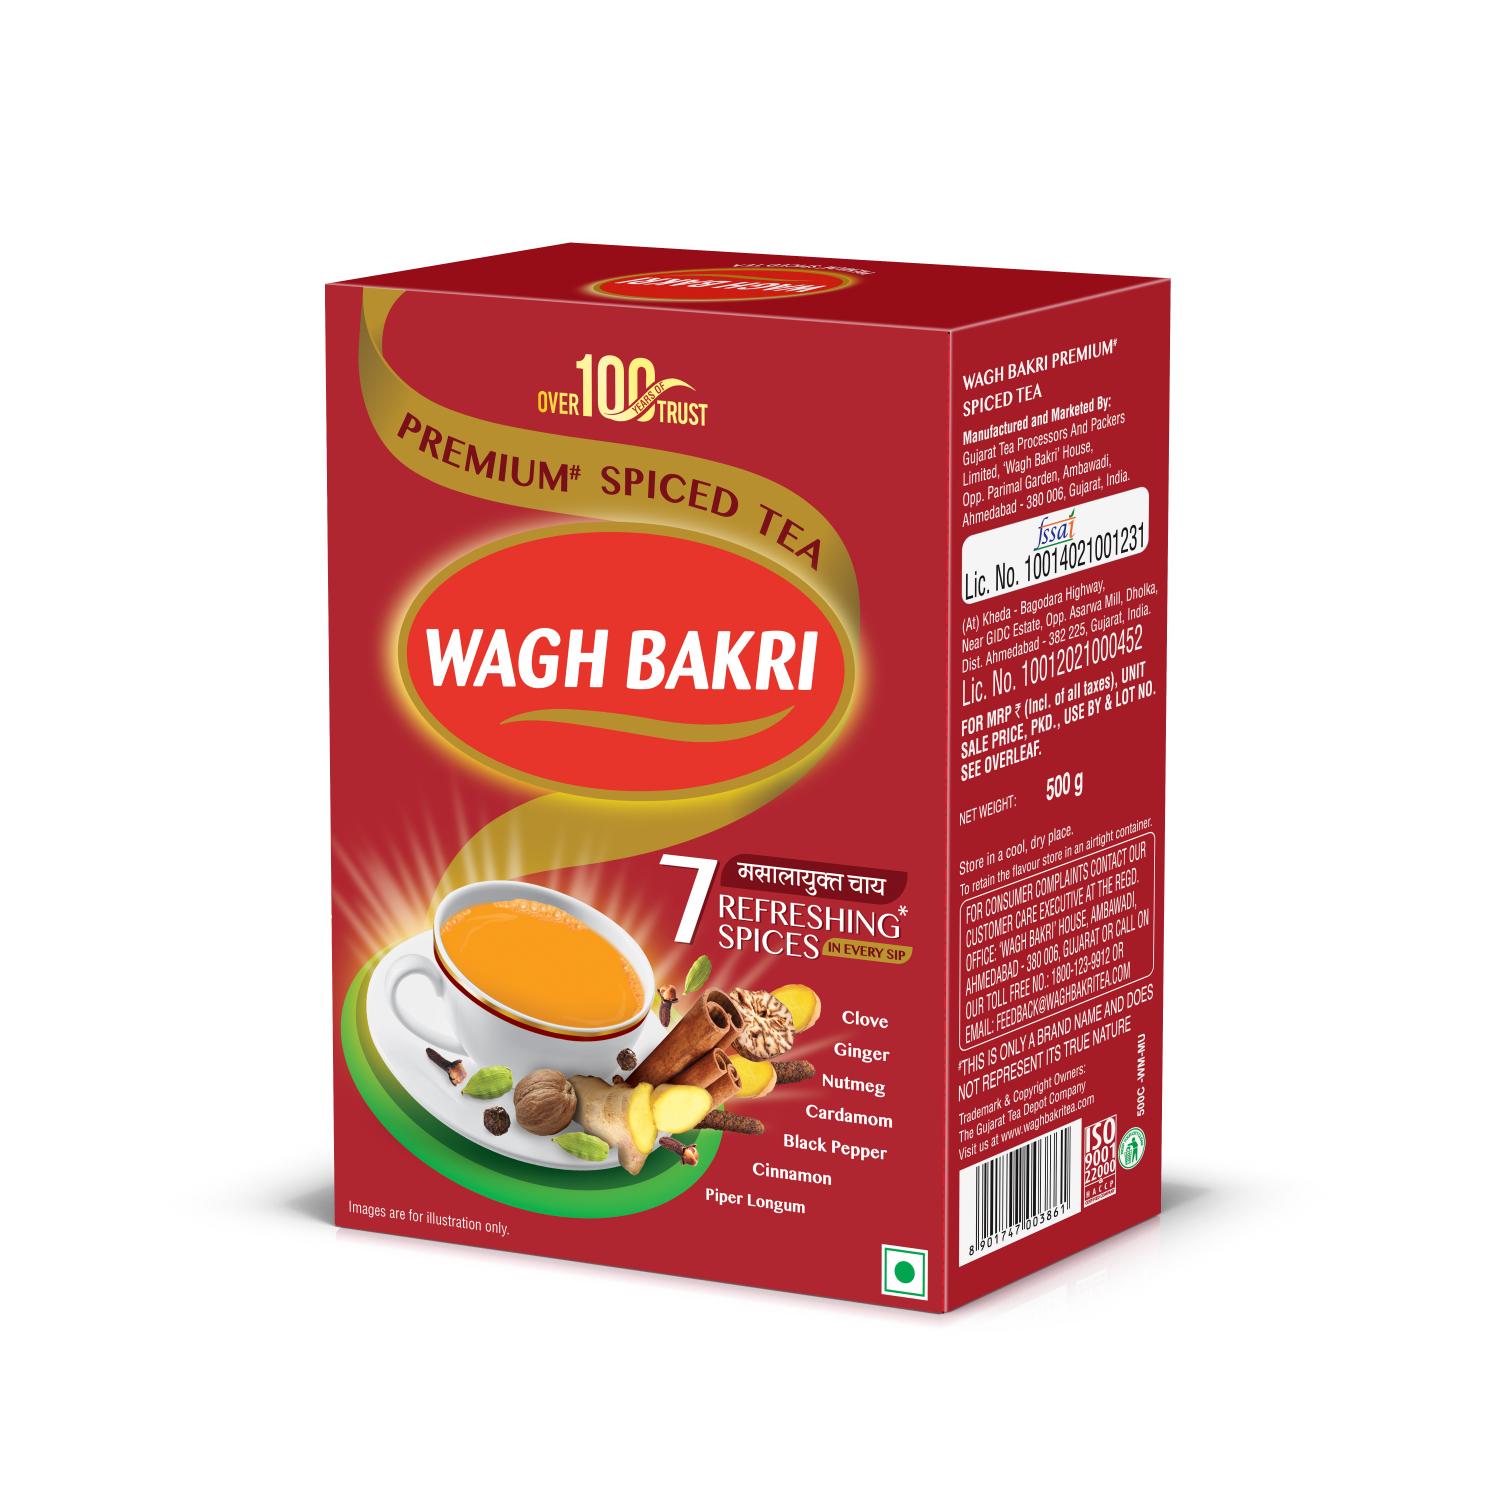 Wagh Bakri Premium Spiced Tea